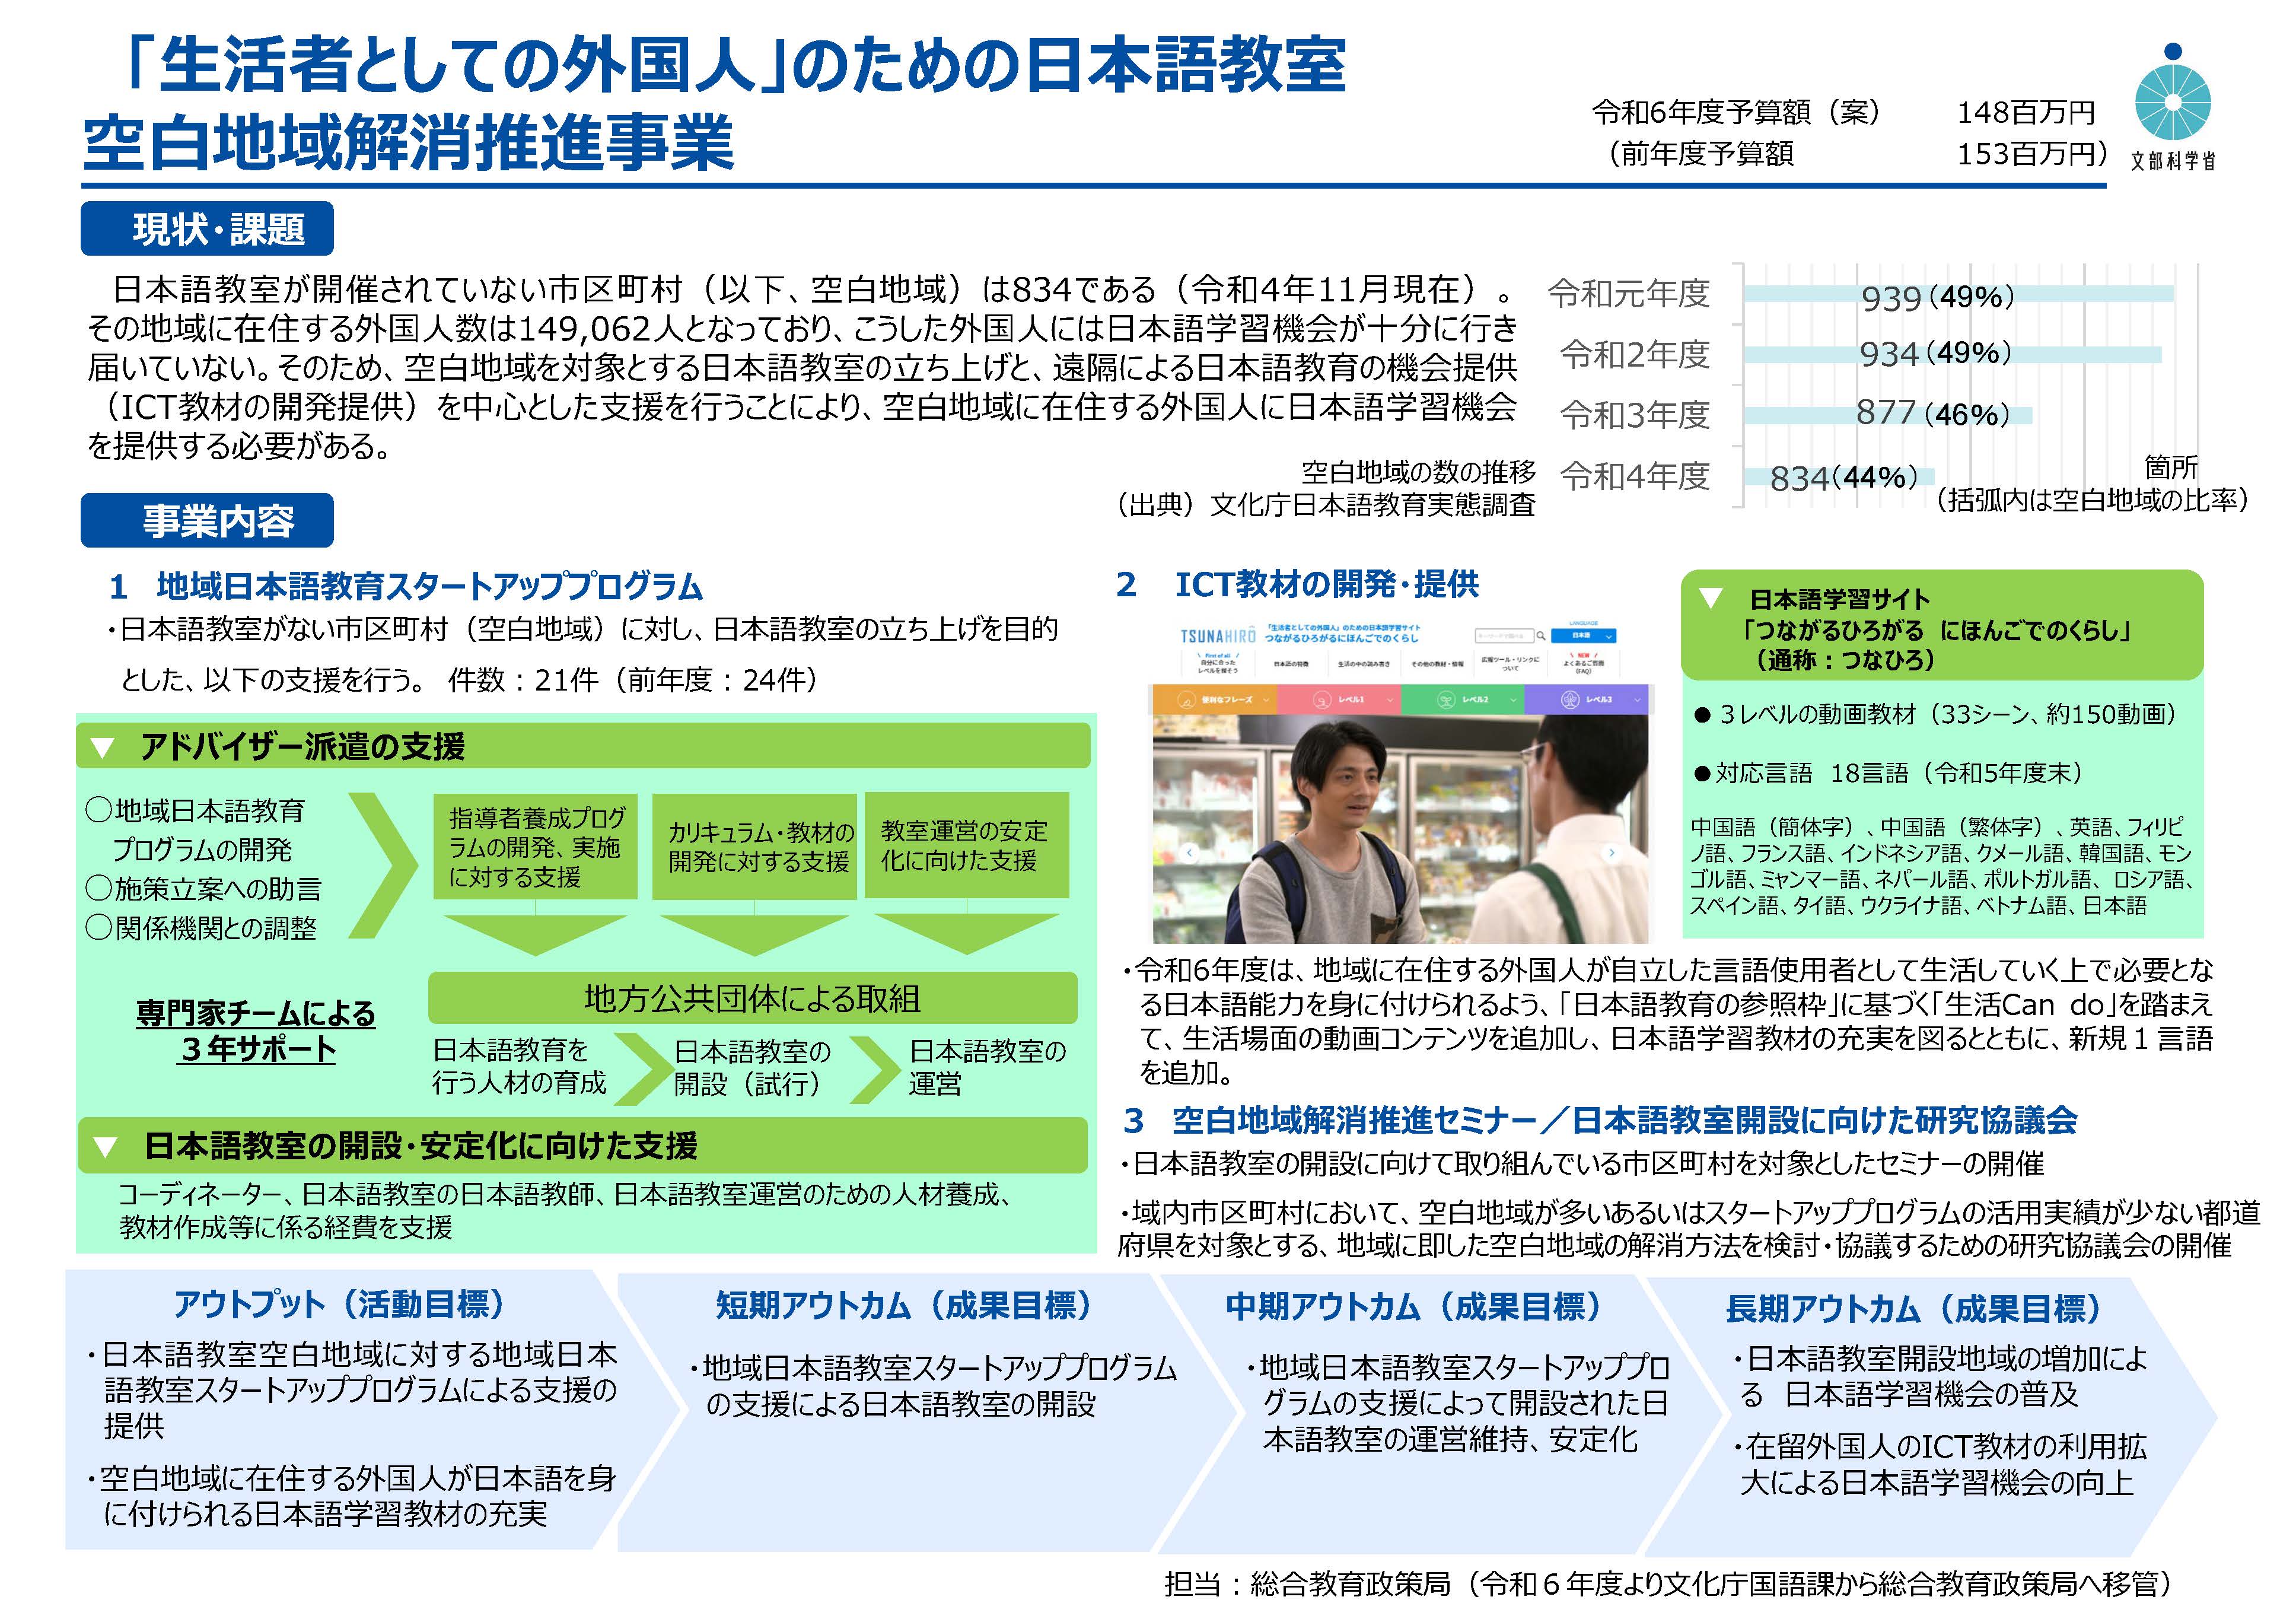 「生活者としての外国人」のための日本語教室空白地域解消推進事業　概要図（画像をクリックするとPDFが開きます。）